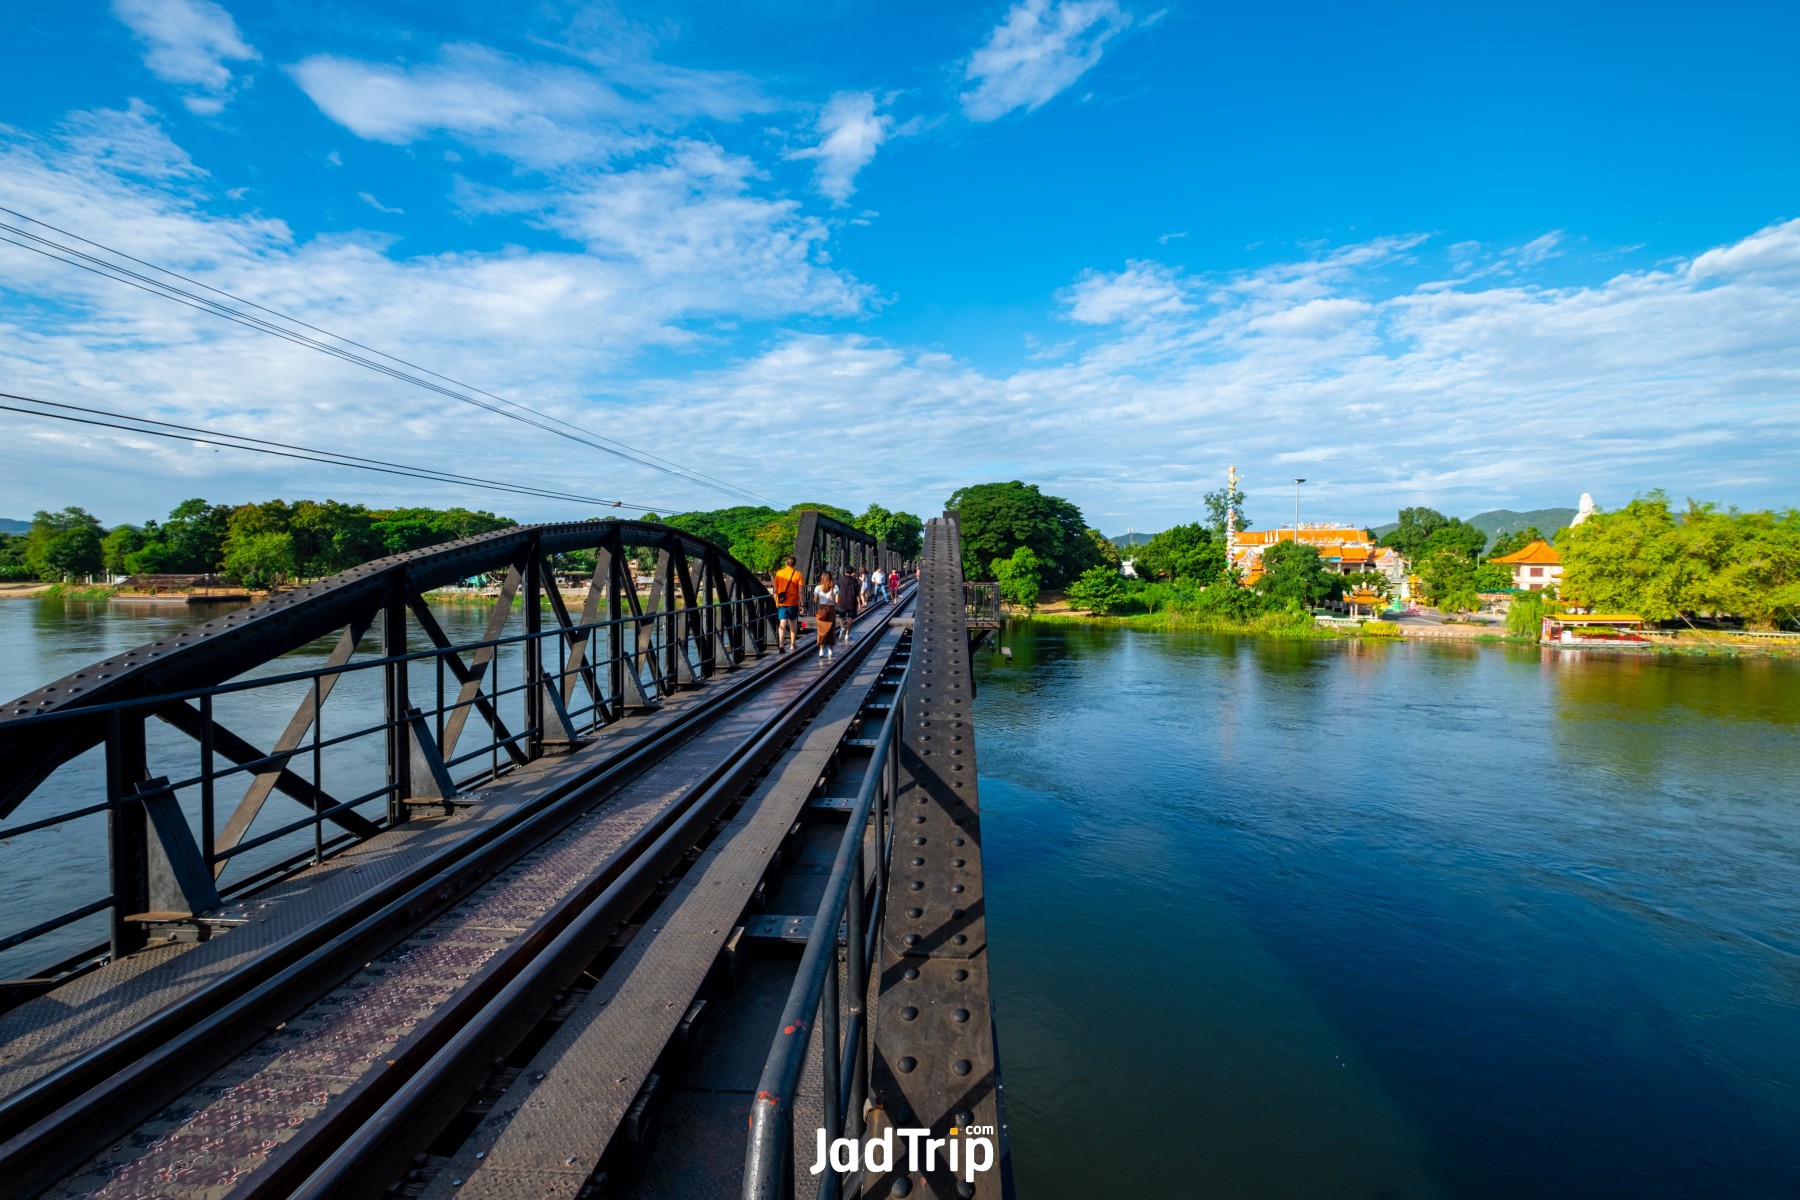 สะพานข้ามแม่น้ำแคว2_jadtrip.jpg